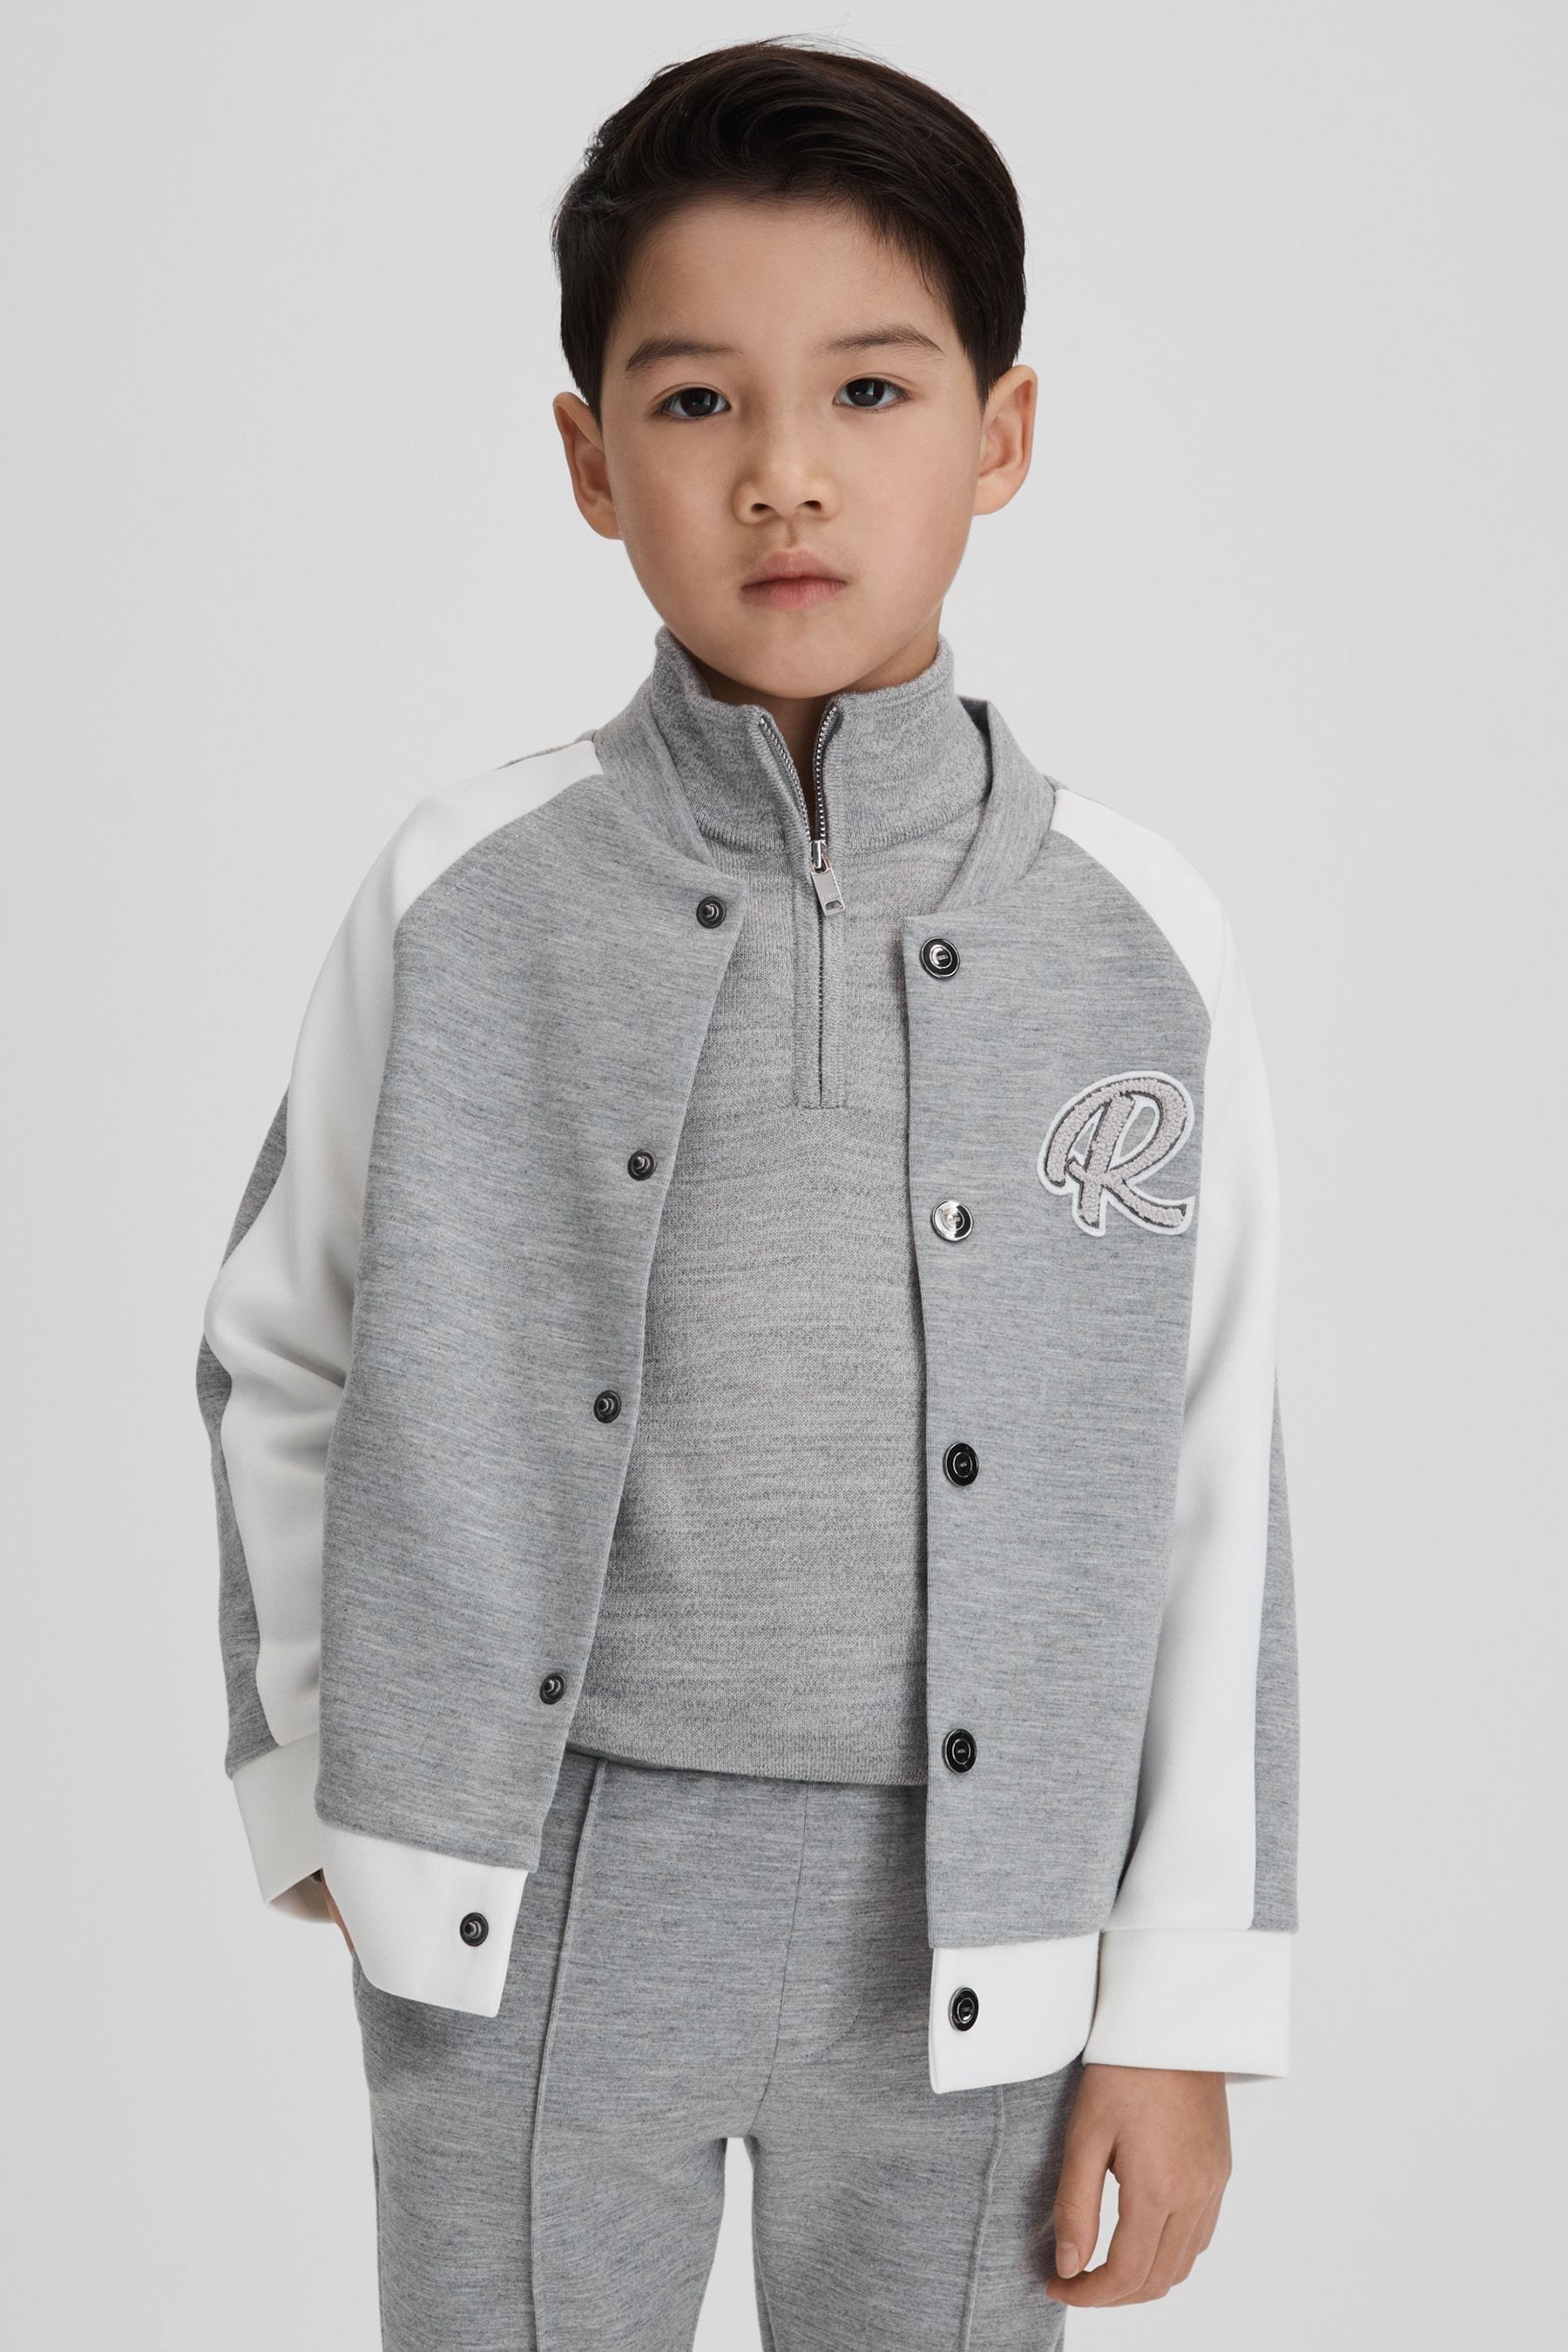 Reiss Pelham - Soft Grey/white Senior Jersey Varsity Jacket, Uk 9-10 Yrs